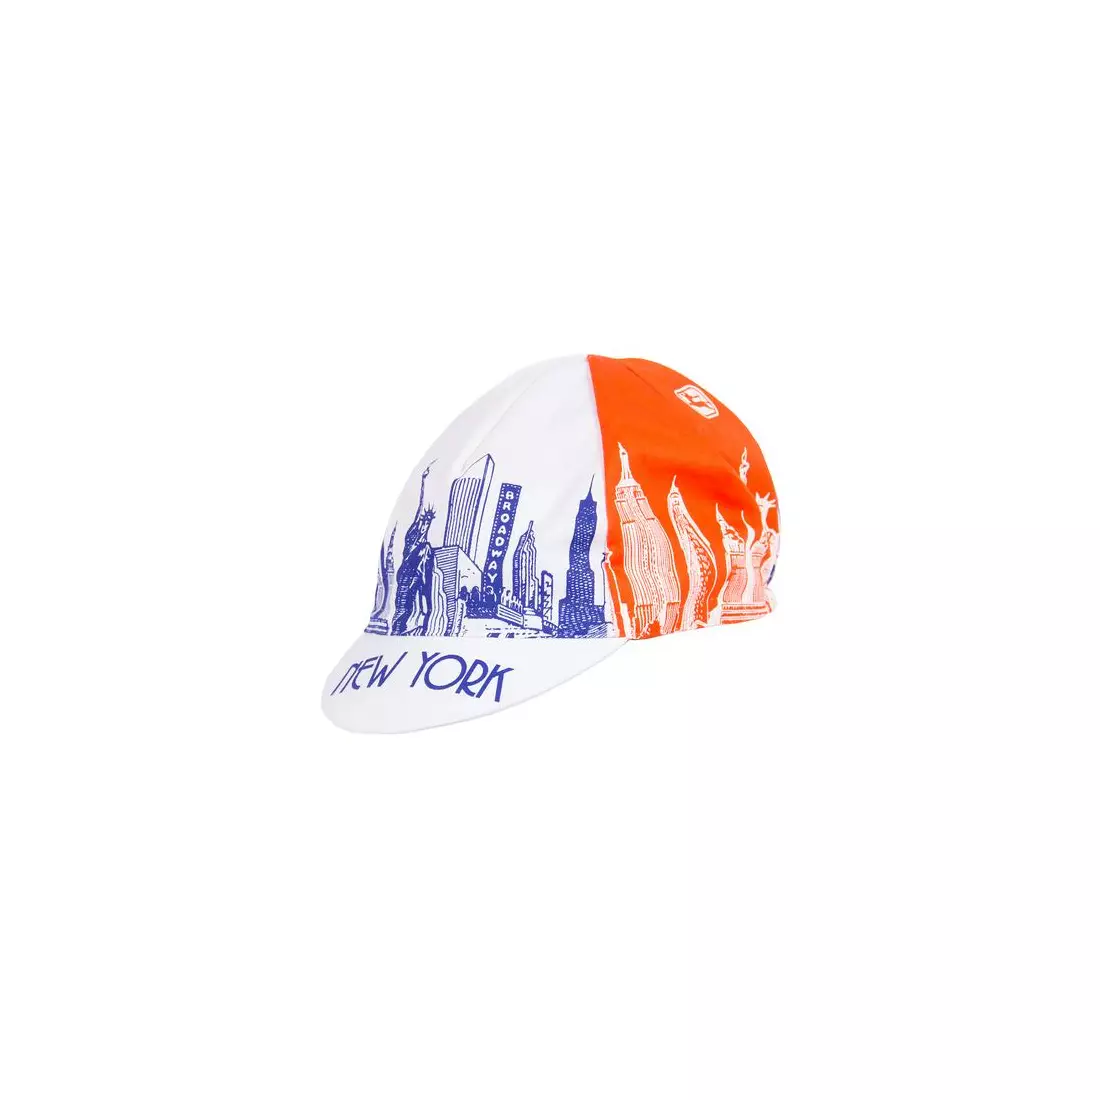 Cyklistická čiapka GIORDANA SS18 - Pamiatky mesta New York - Modrá/Oranžová/Biela GI-S5-COCA-NYCL-BLOR jedna veľkosť